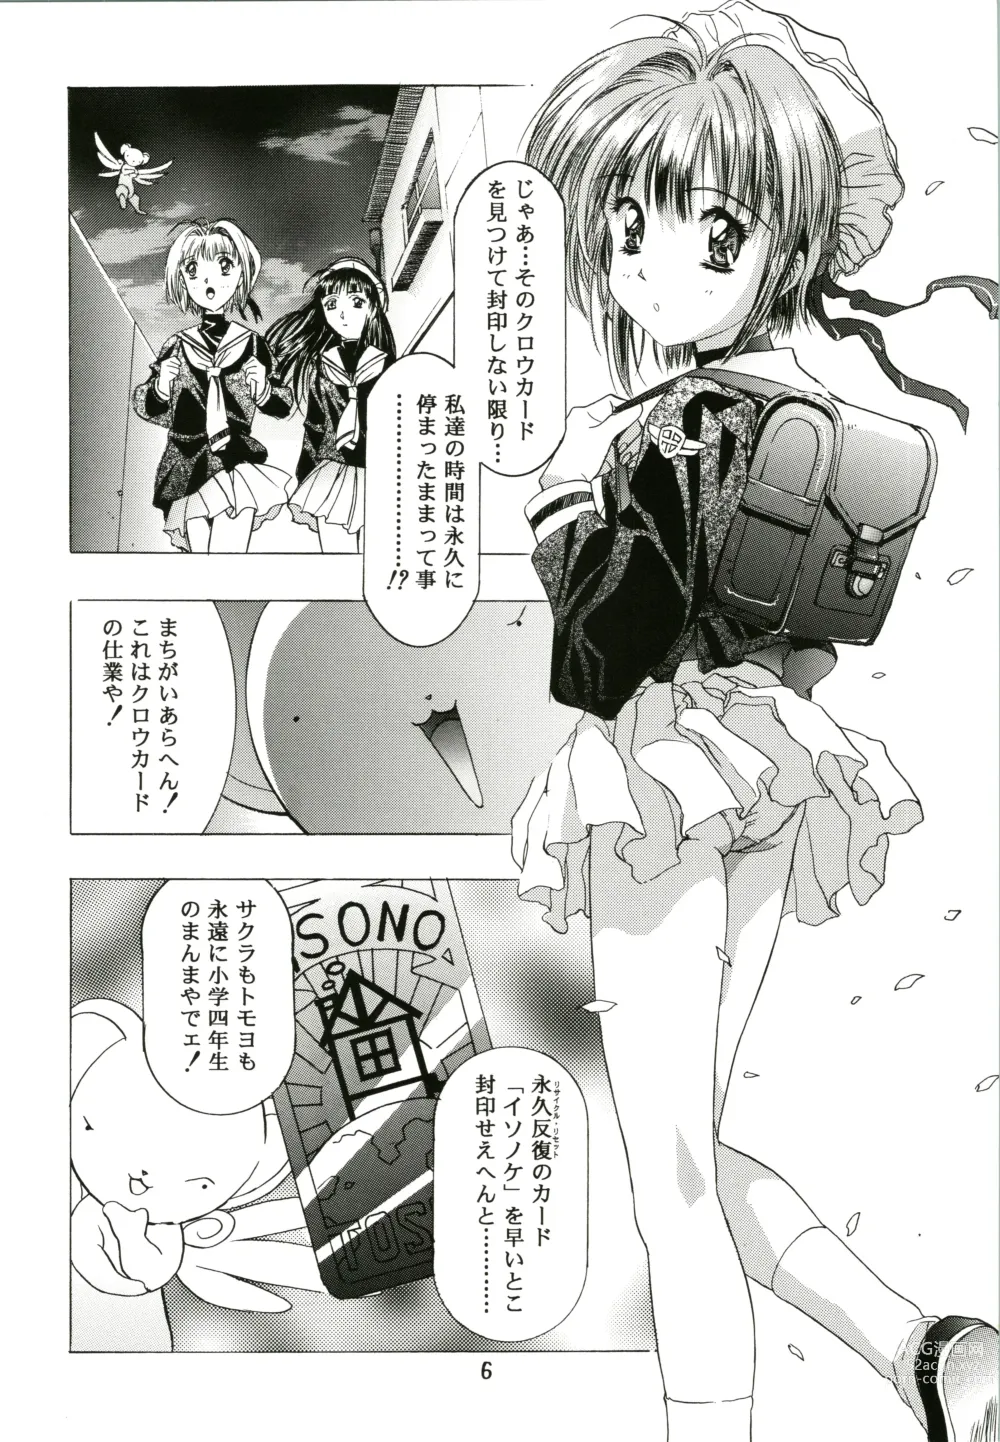 Page 6 of doujinshi Sakura Ame